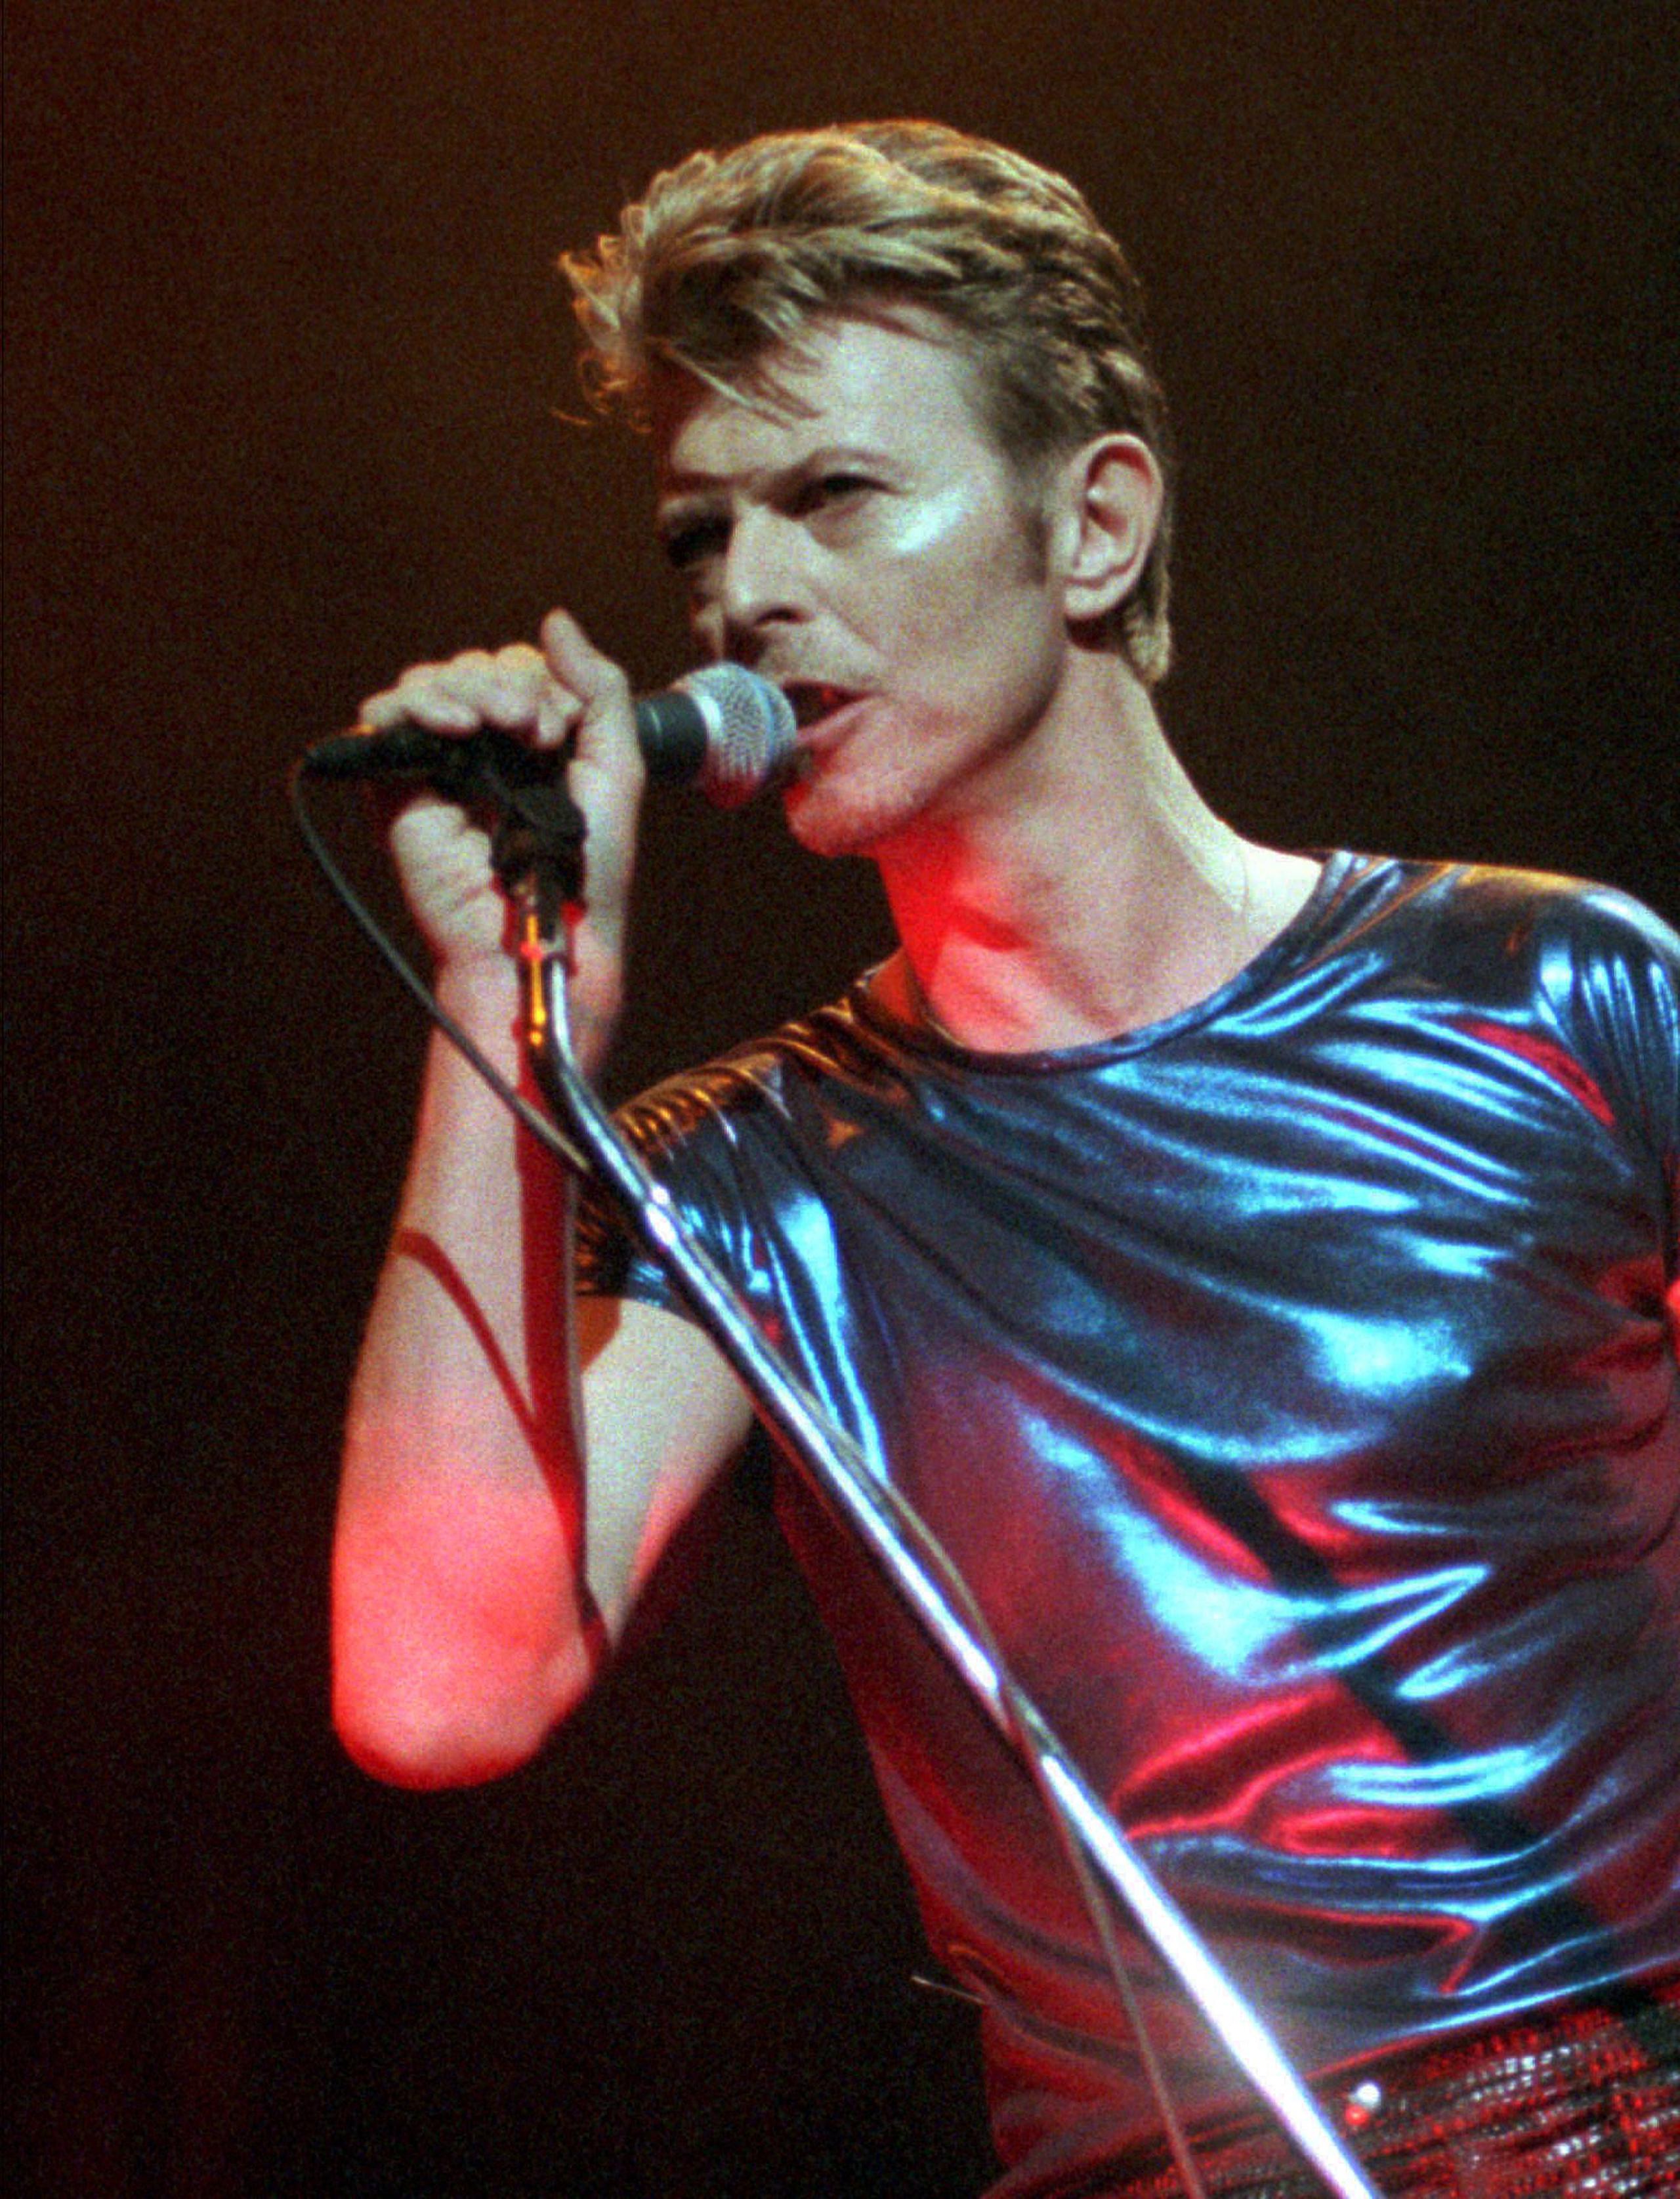 David Bowie fue un artista camaleónico, que mutó varias veces de estilo y recogió múltiples influencias para crear el propio, sobre todo de la psicodelia y el punk, que le hicieron adoptar en los años setenta un provocativo aspecto andrógino, anticipándose a personajes como Boy George.